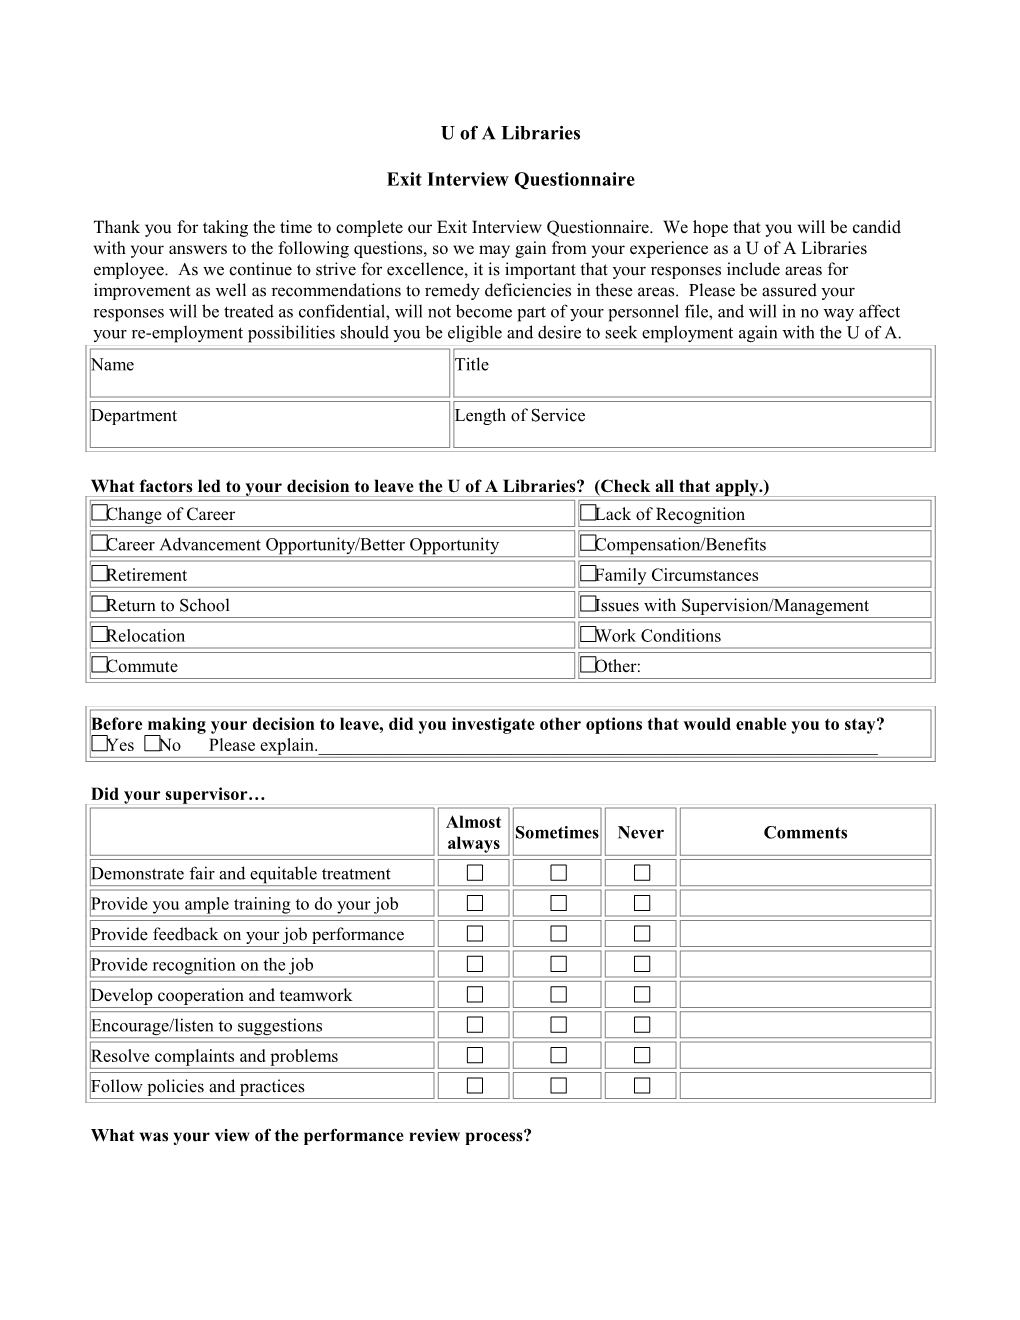 Exit Interview Questionnaire